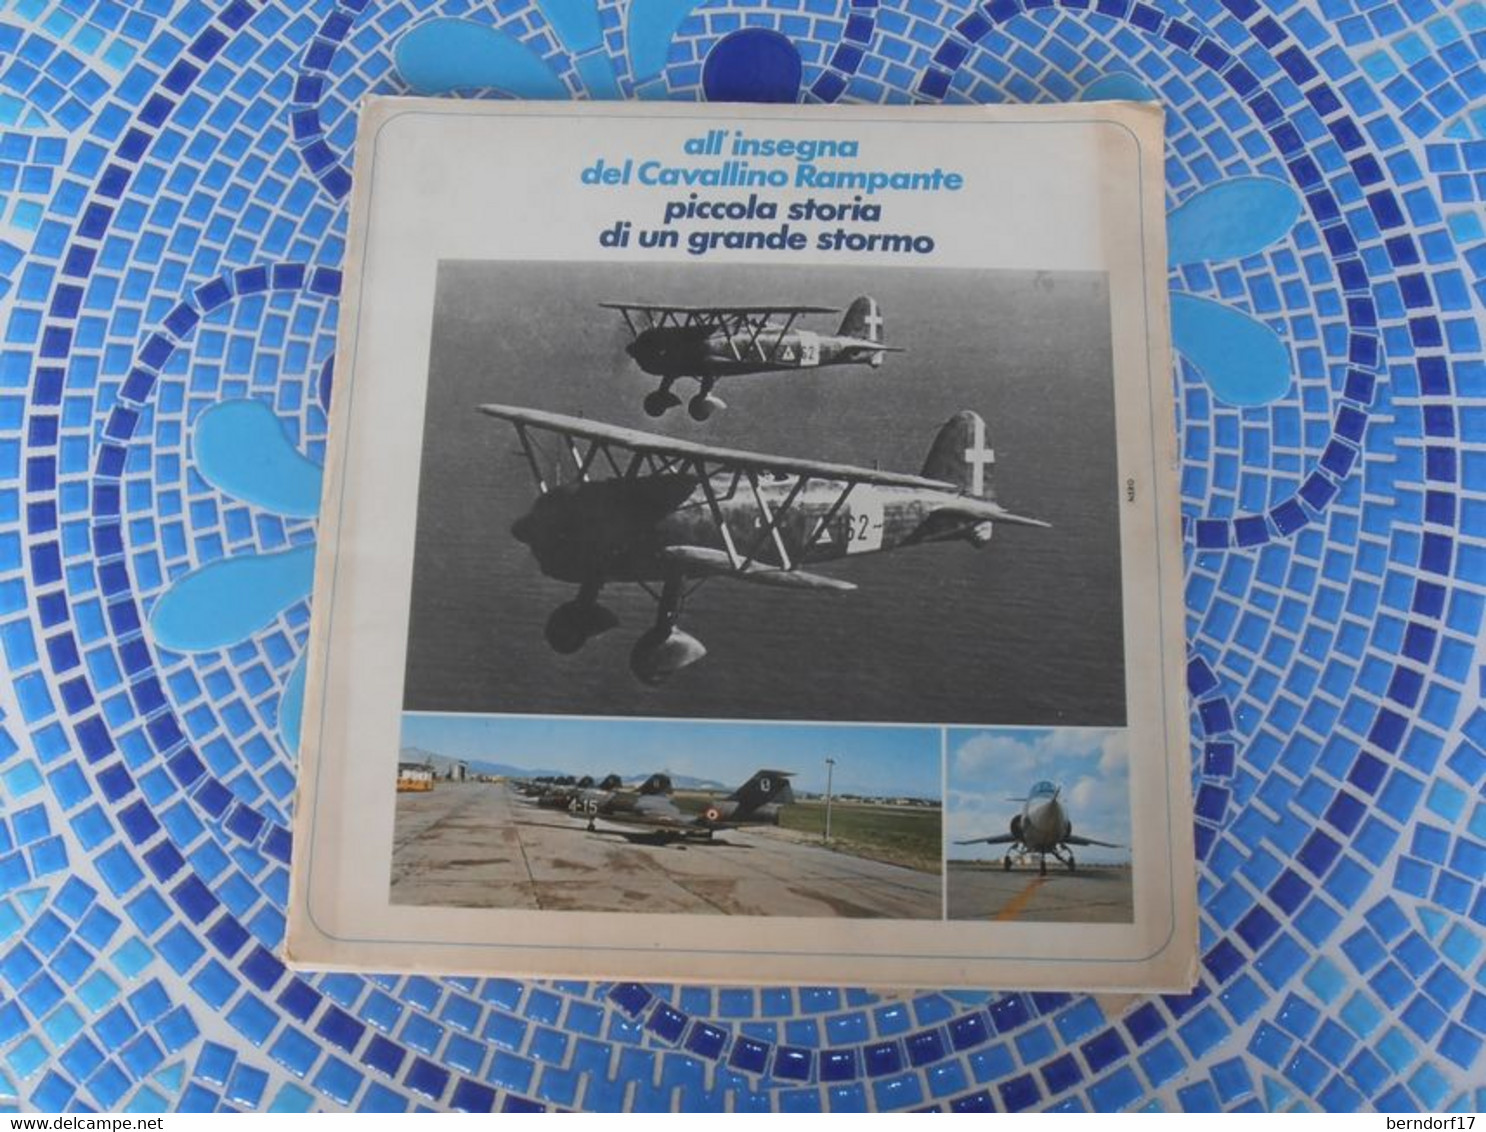 AERONAUTICA MILITARE - PUBBLICAZIONE ALL'INSEGNA DEL CAVALLINO RAMPANTE 4° STORMO - Aviation